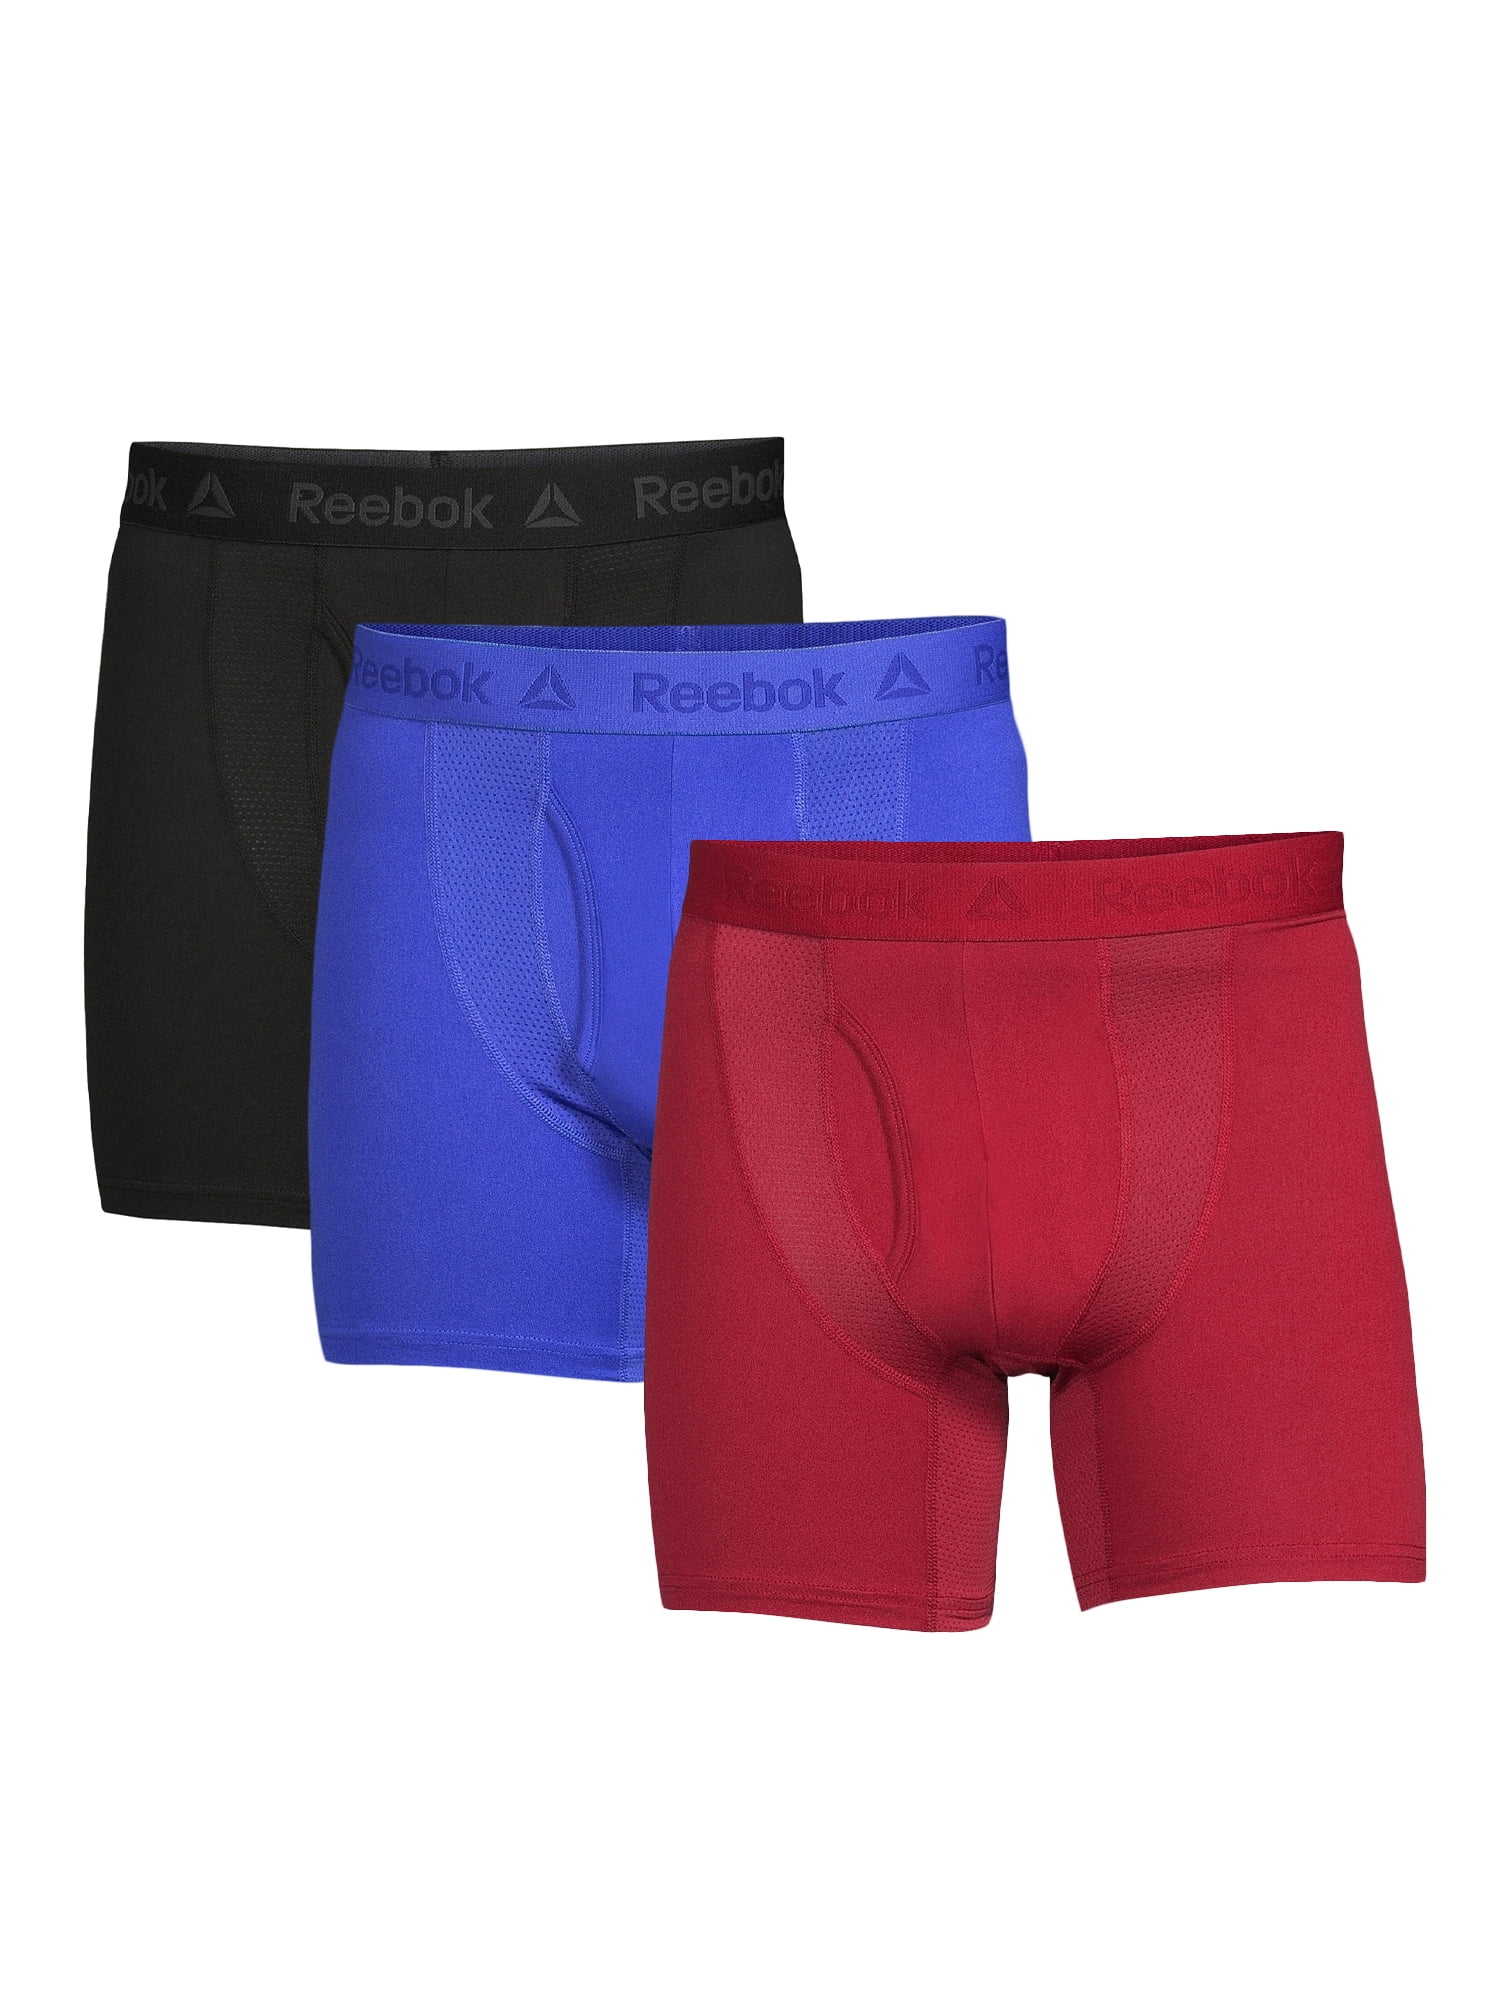 MEN FASHION Underwear & Nightwear Jack & Jones Socks Multicolored Single discount 50% 